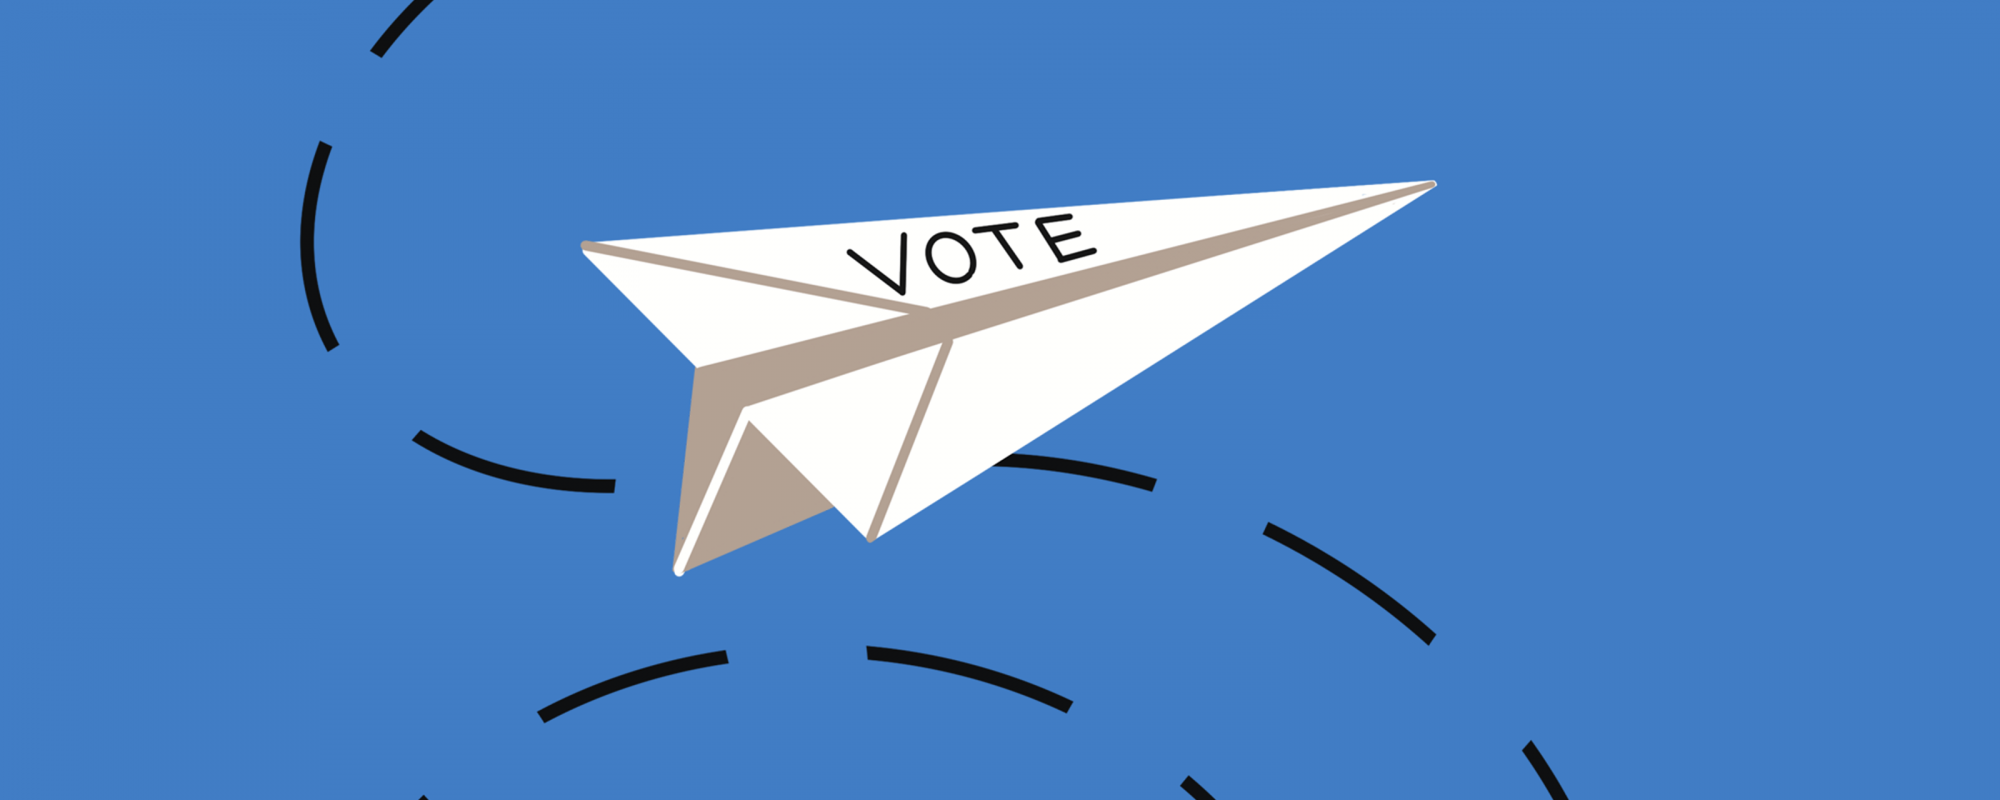 Infographie représentant un avion en papier. Le mot "vote" est inscrit dessus